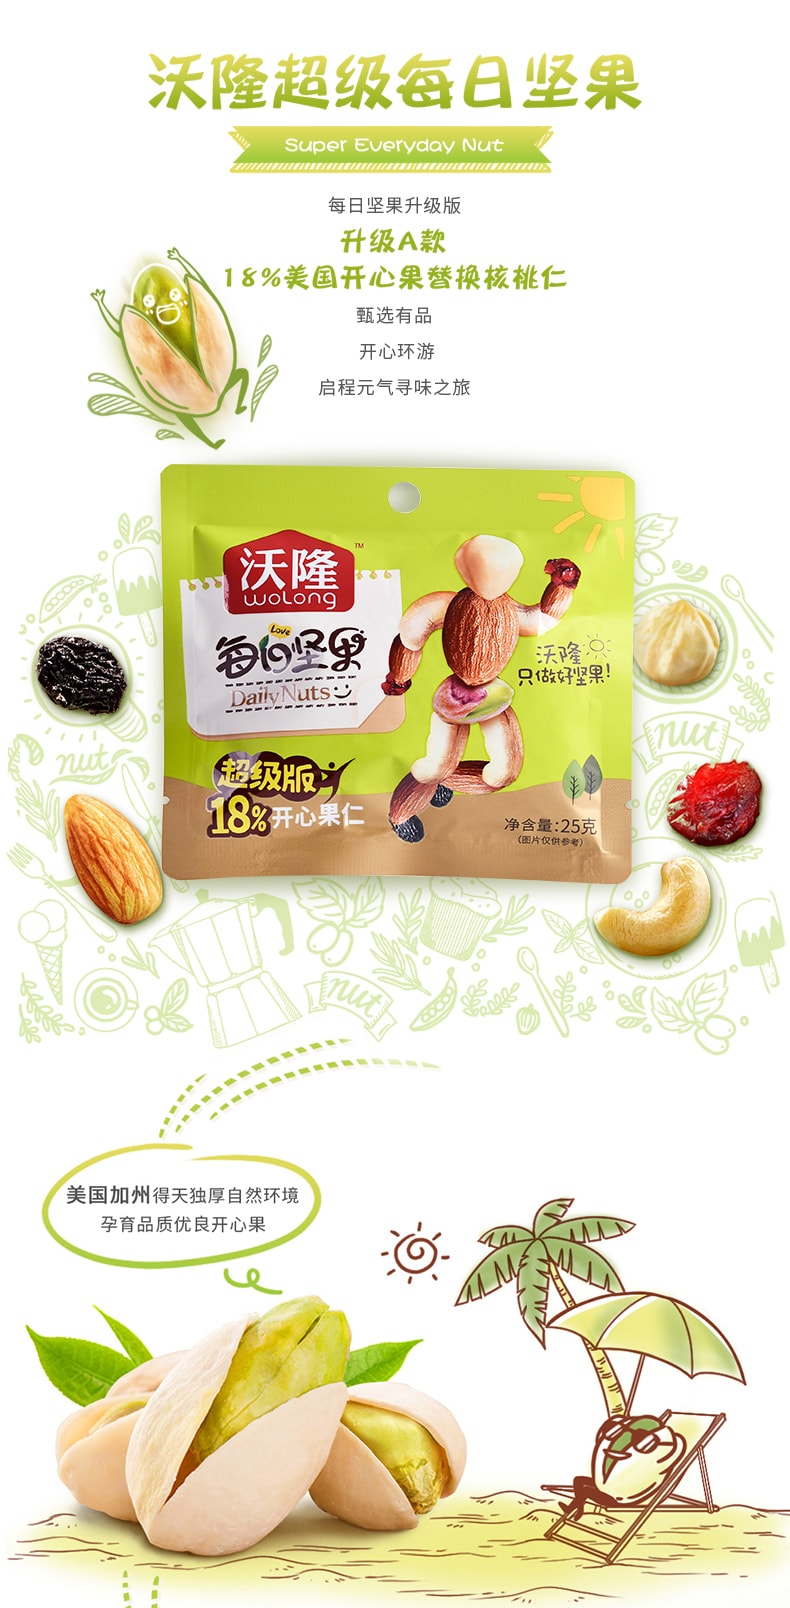 换包装[中国直邮]沃隆Wolong 每日坚果 学生超级版 混合坚果 营养大礼包 30日份 750g/1盒装